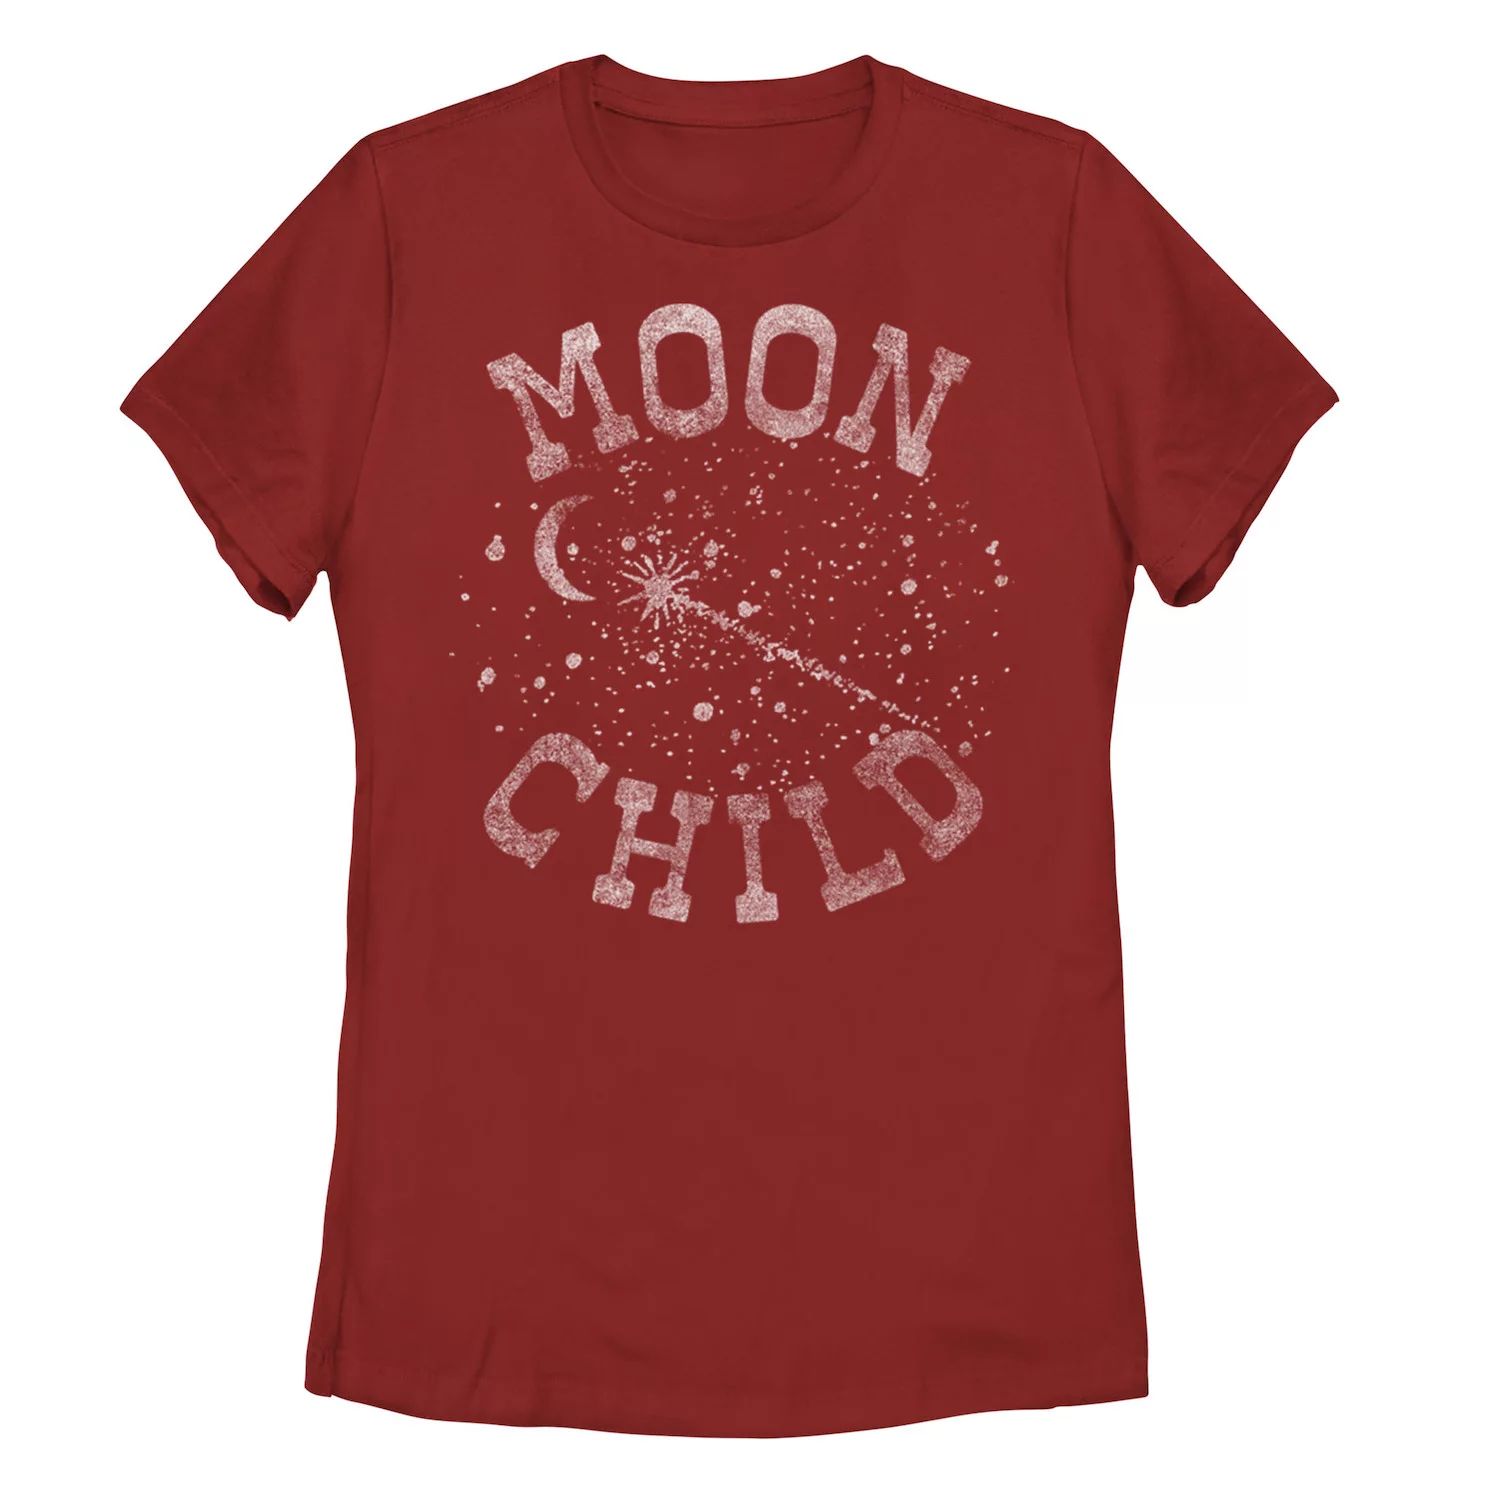 Детская футболка Moon Child с надписью Galactic, красный